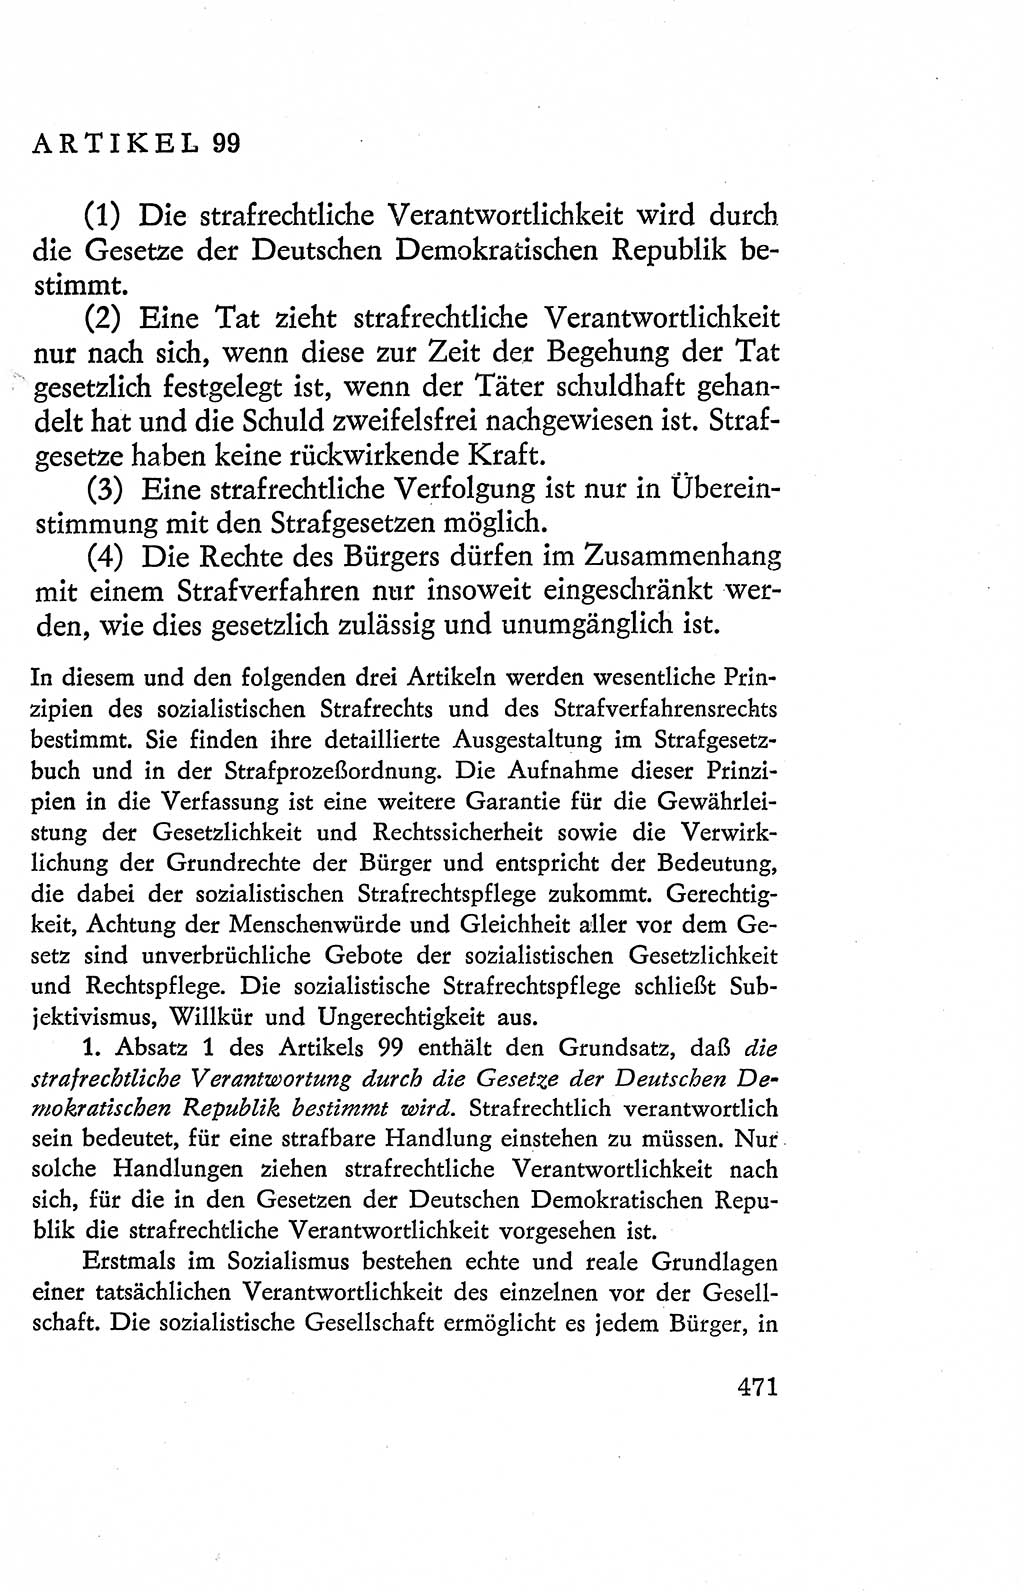 Verfassung der Deutschen Demokratischen Republik (DDR), Dokumente, Kommentar 1969, Band 2, Seite 471 (Verf. DDR Dok. Komm. 1969, Bd. 2, S. 471)